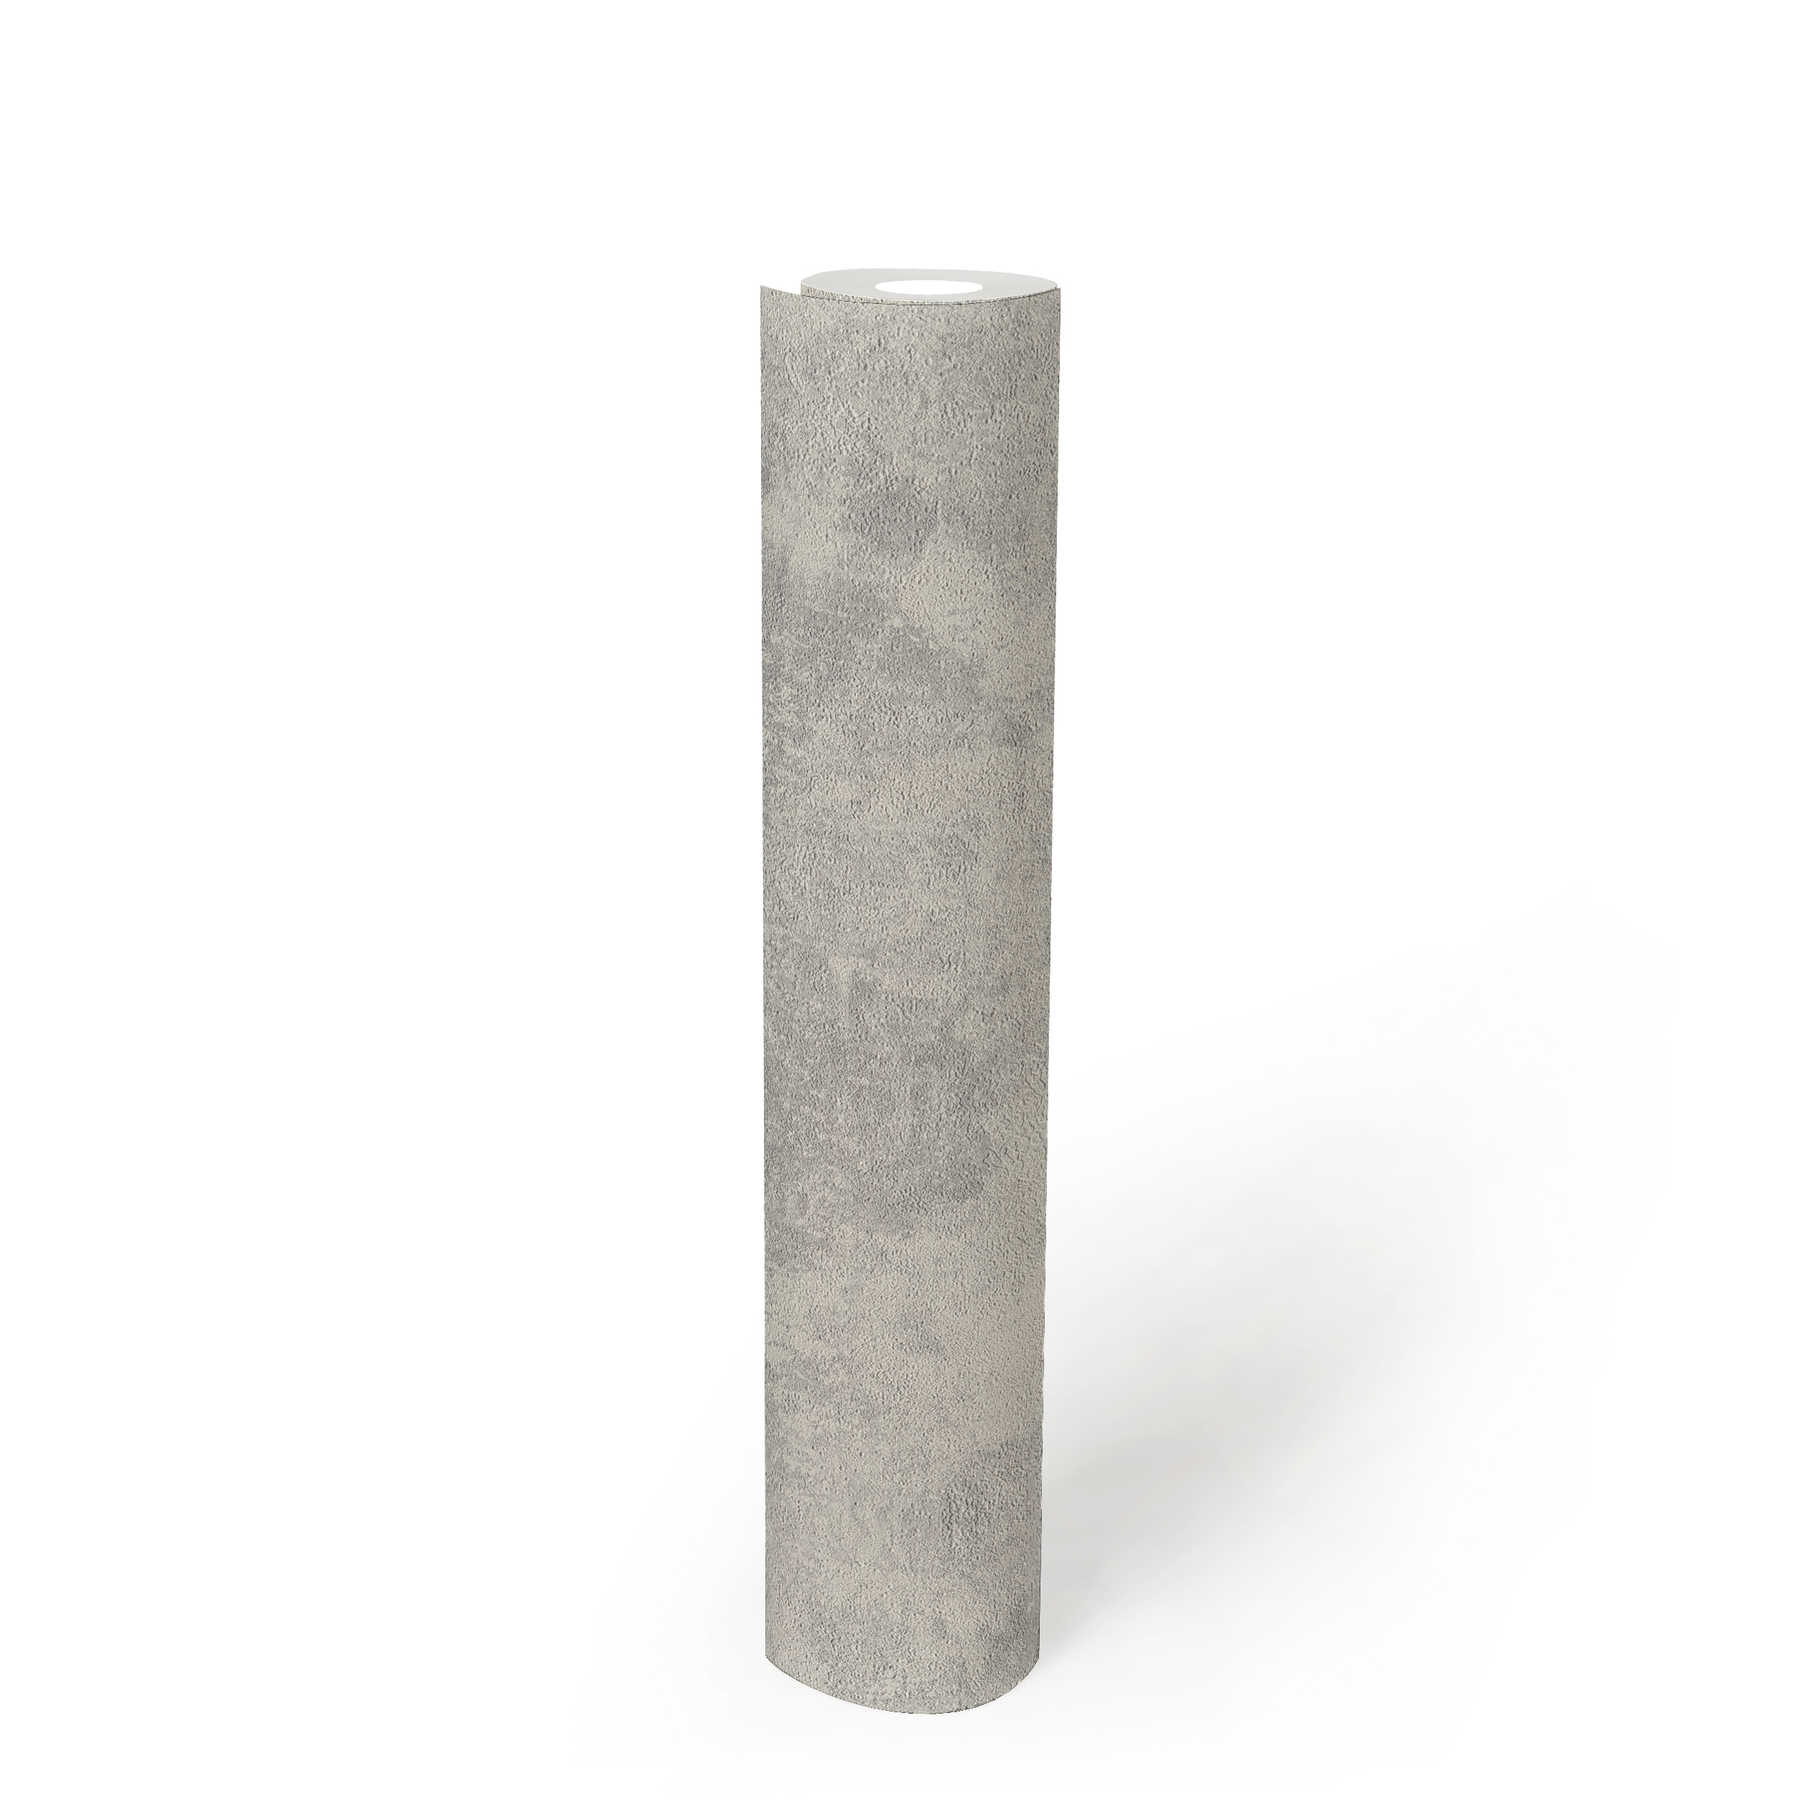             Vliestapeten mit Scheibenputz-Optik & Strukturmuster – Grau, Silber
        